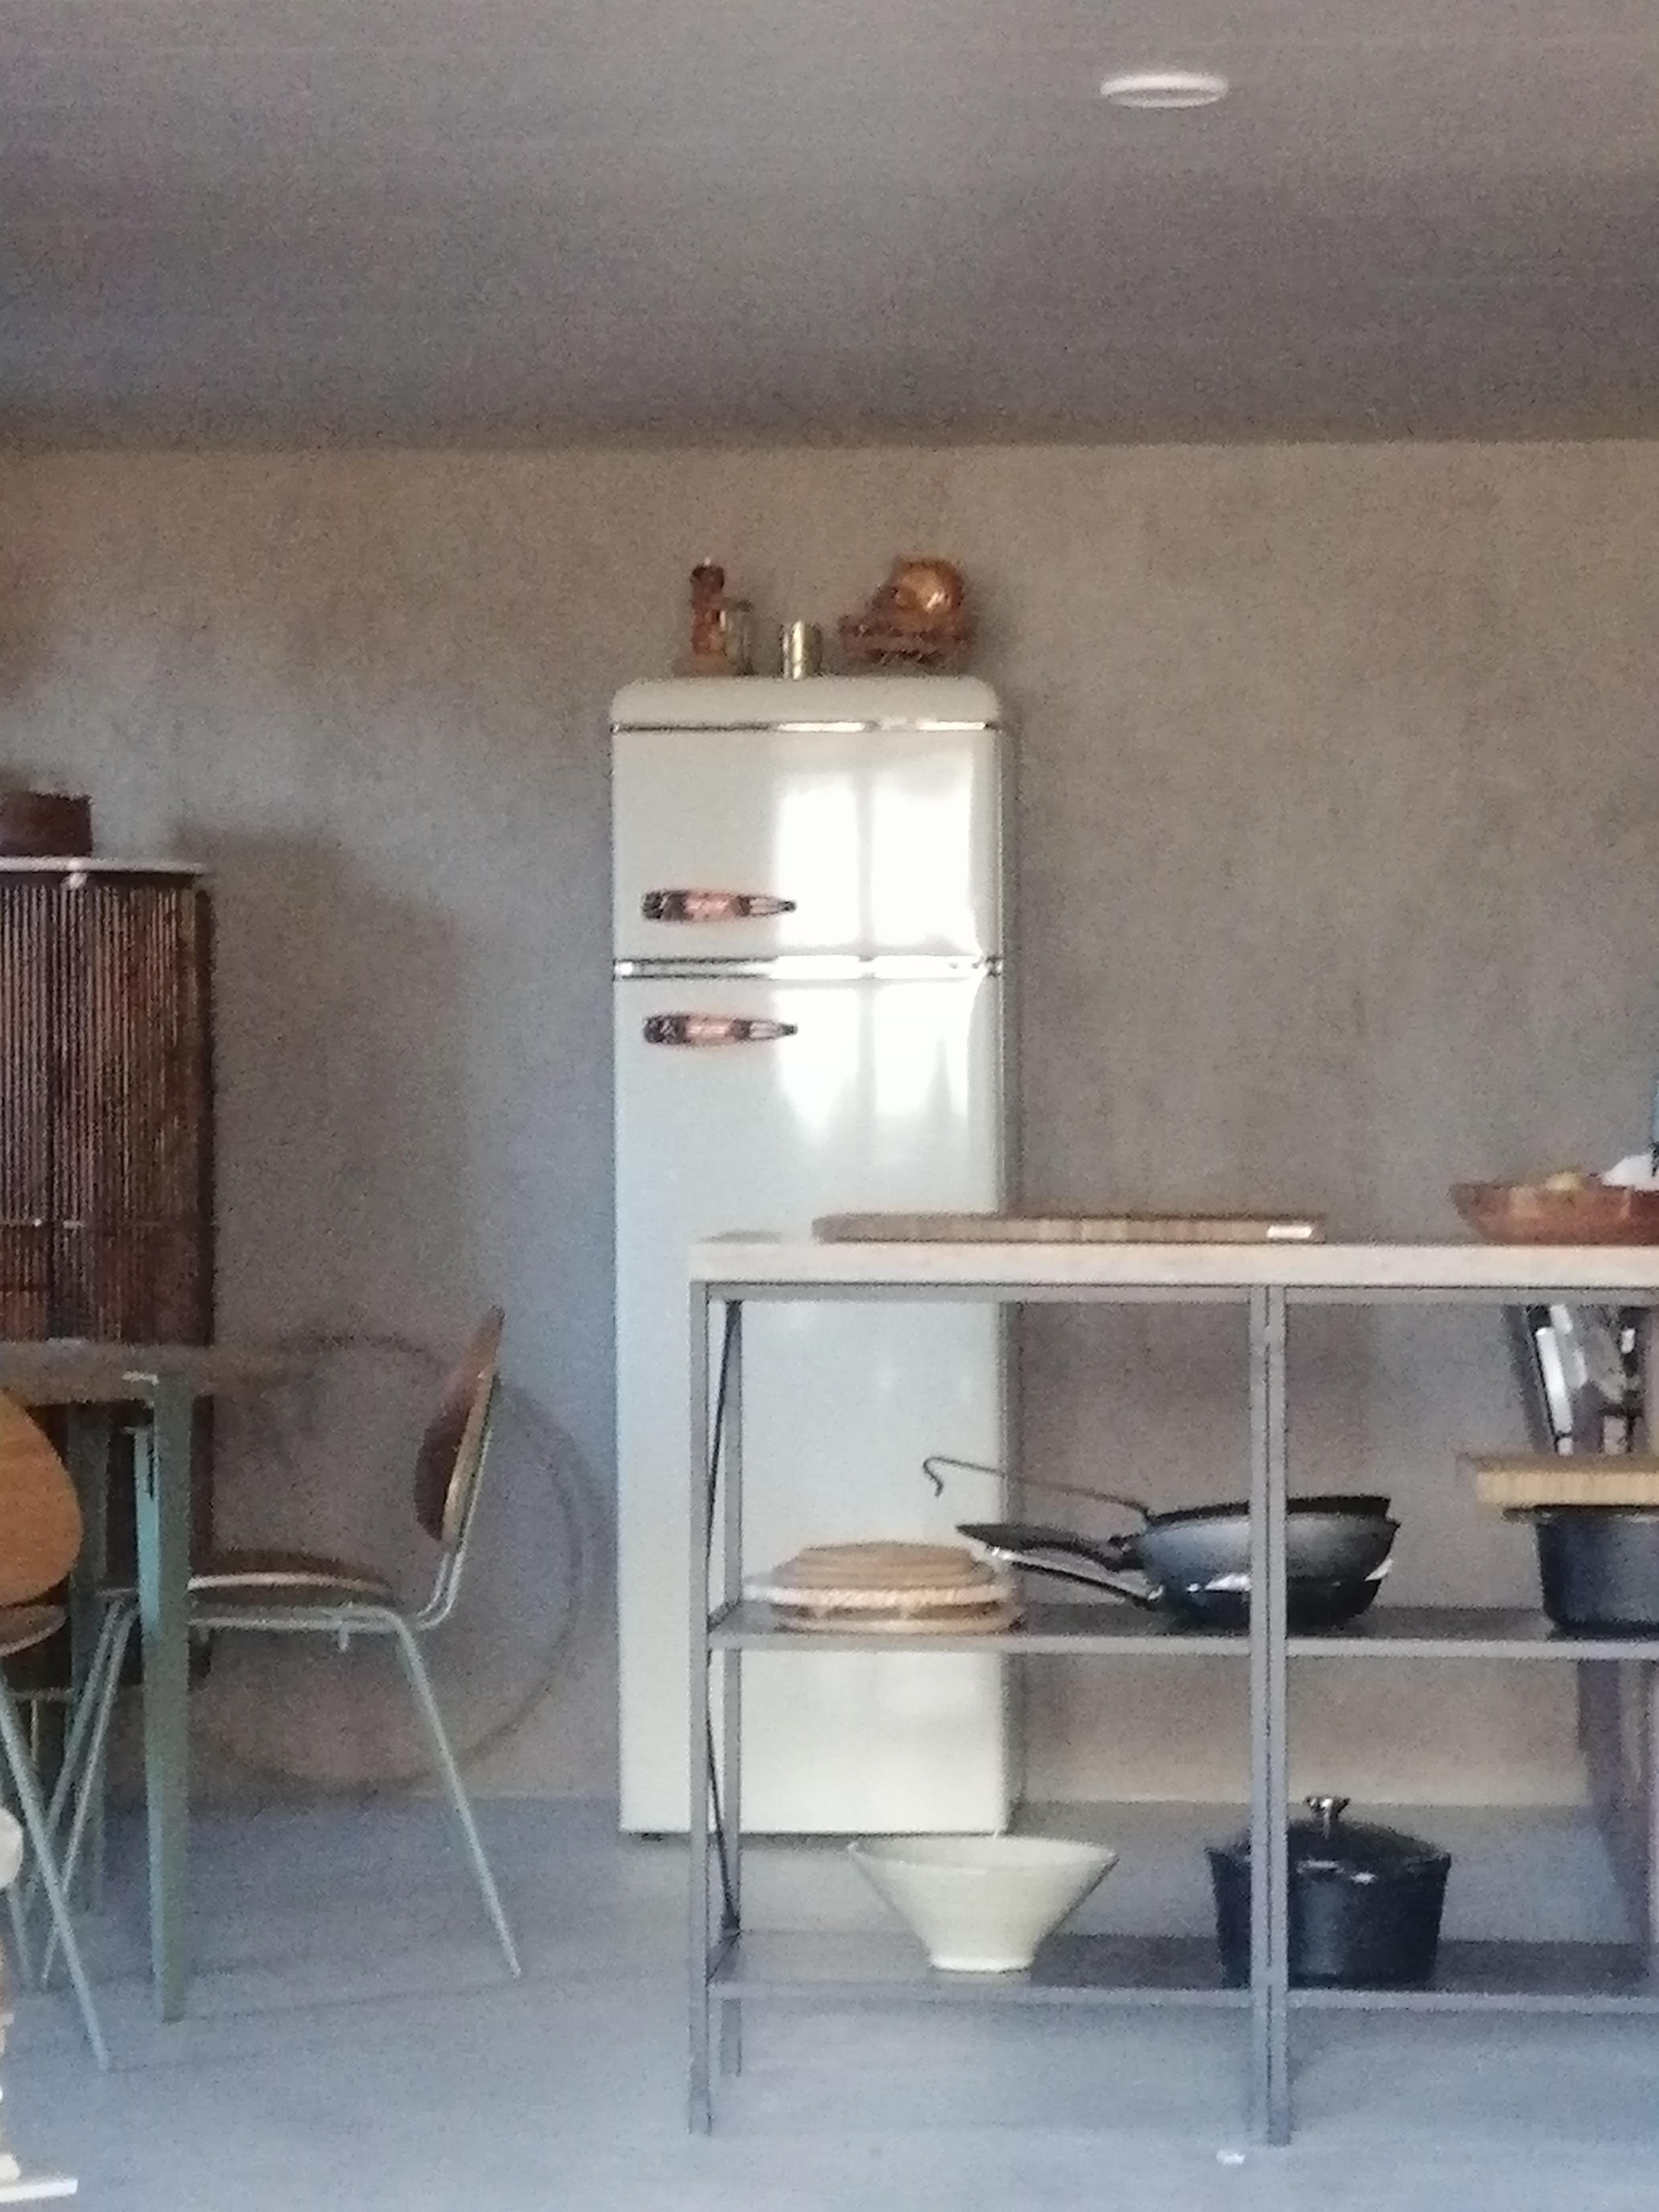 #vorher-nachher #renovation #diy #altbausanierung #hideaway #slowlife #küche #happylife